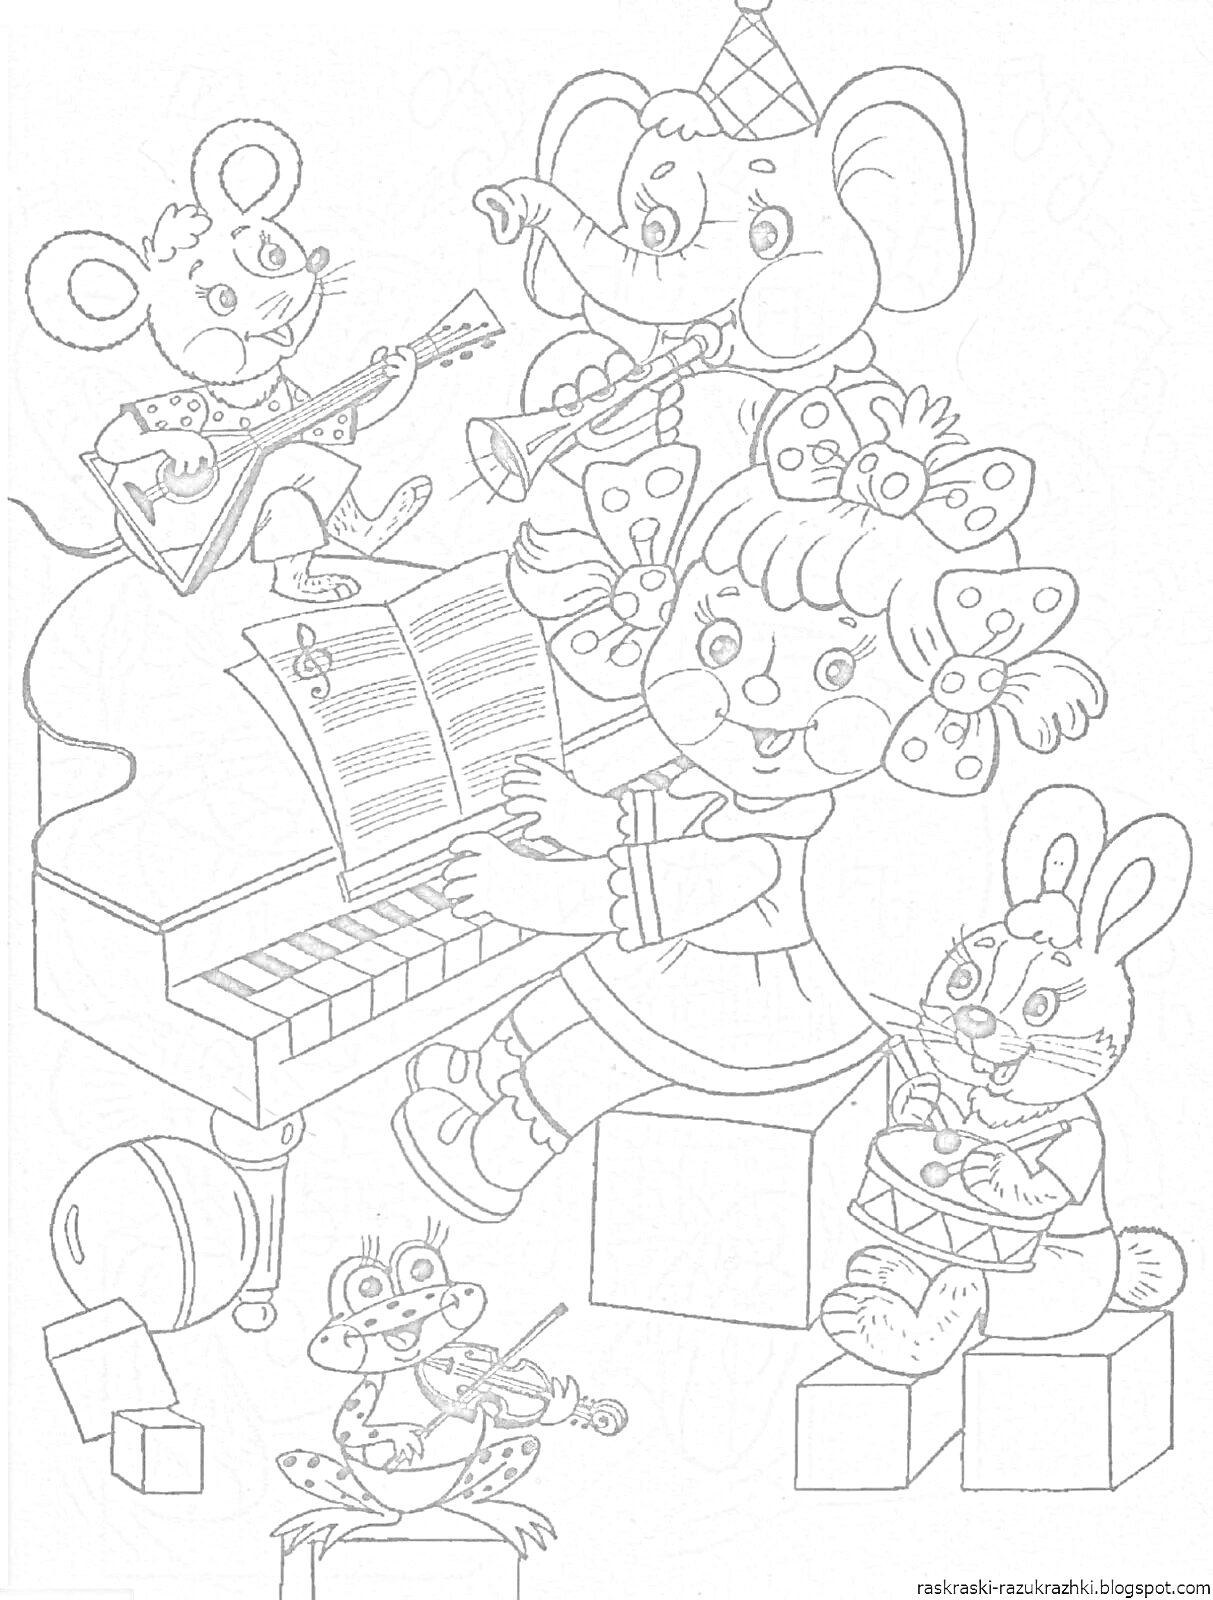 На раскраске изображено: Музыкальные инструменты, Пианино, Балалайка, Труба, Скрипка, Барабан, Животные